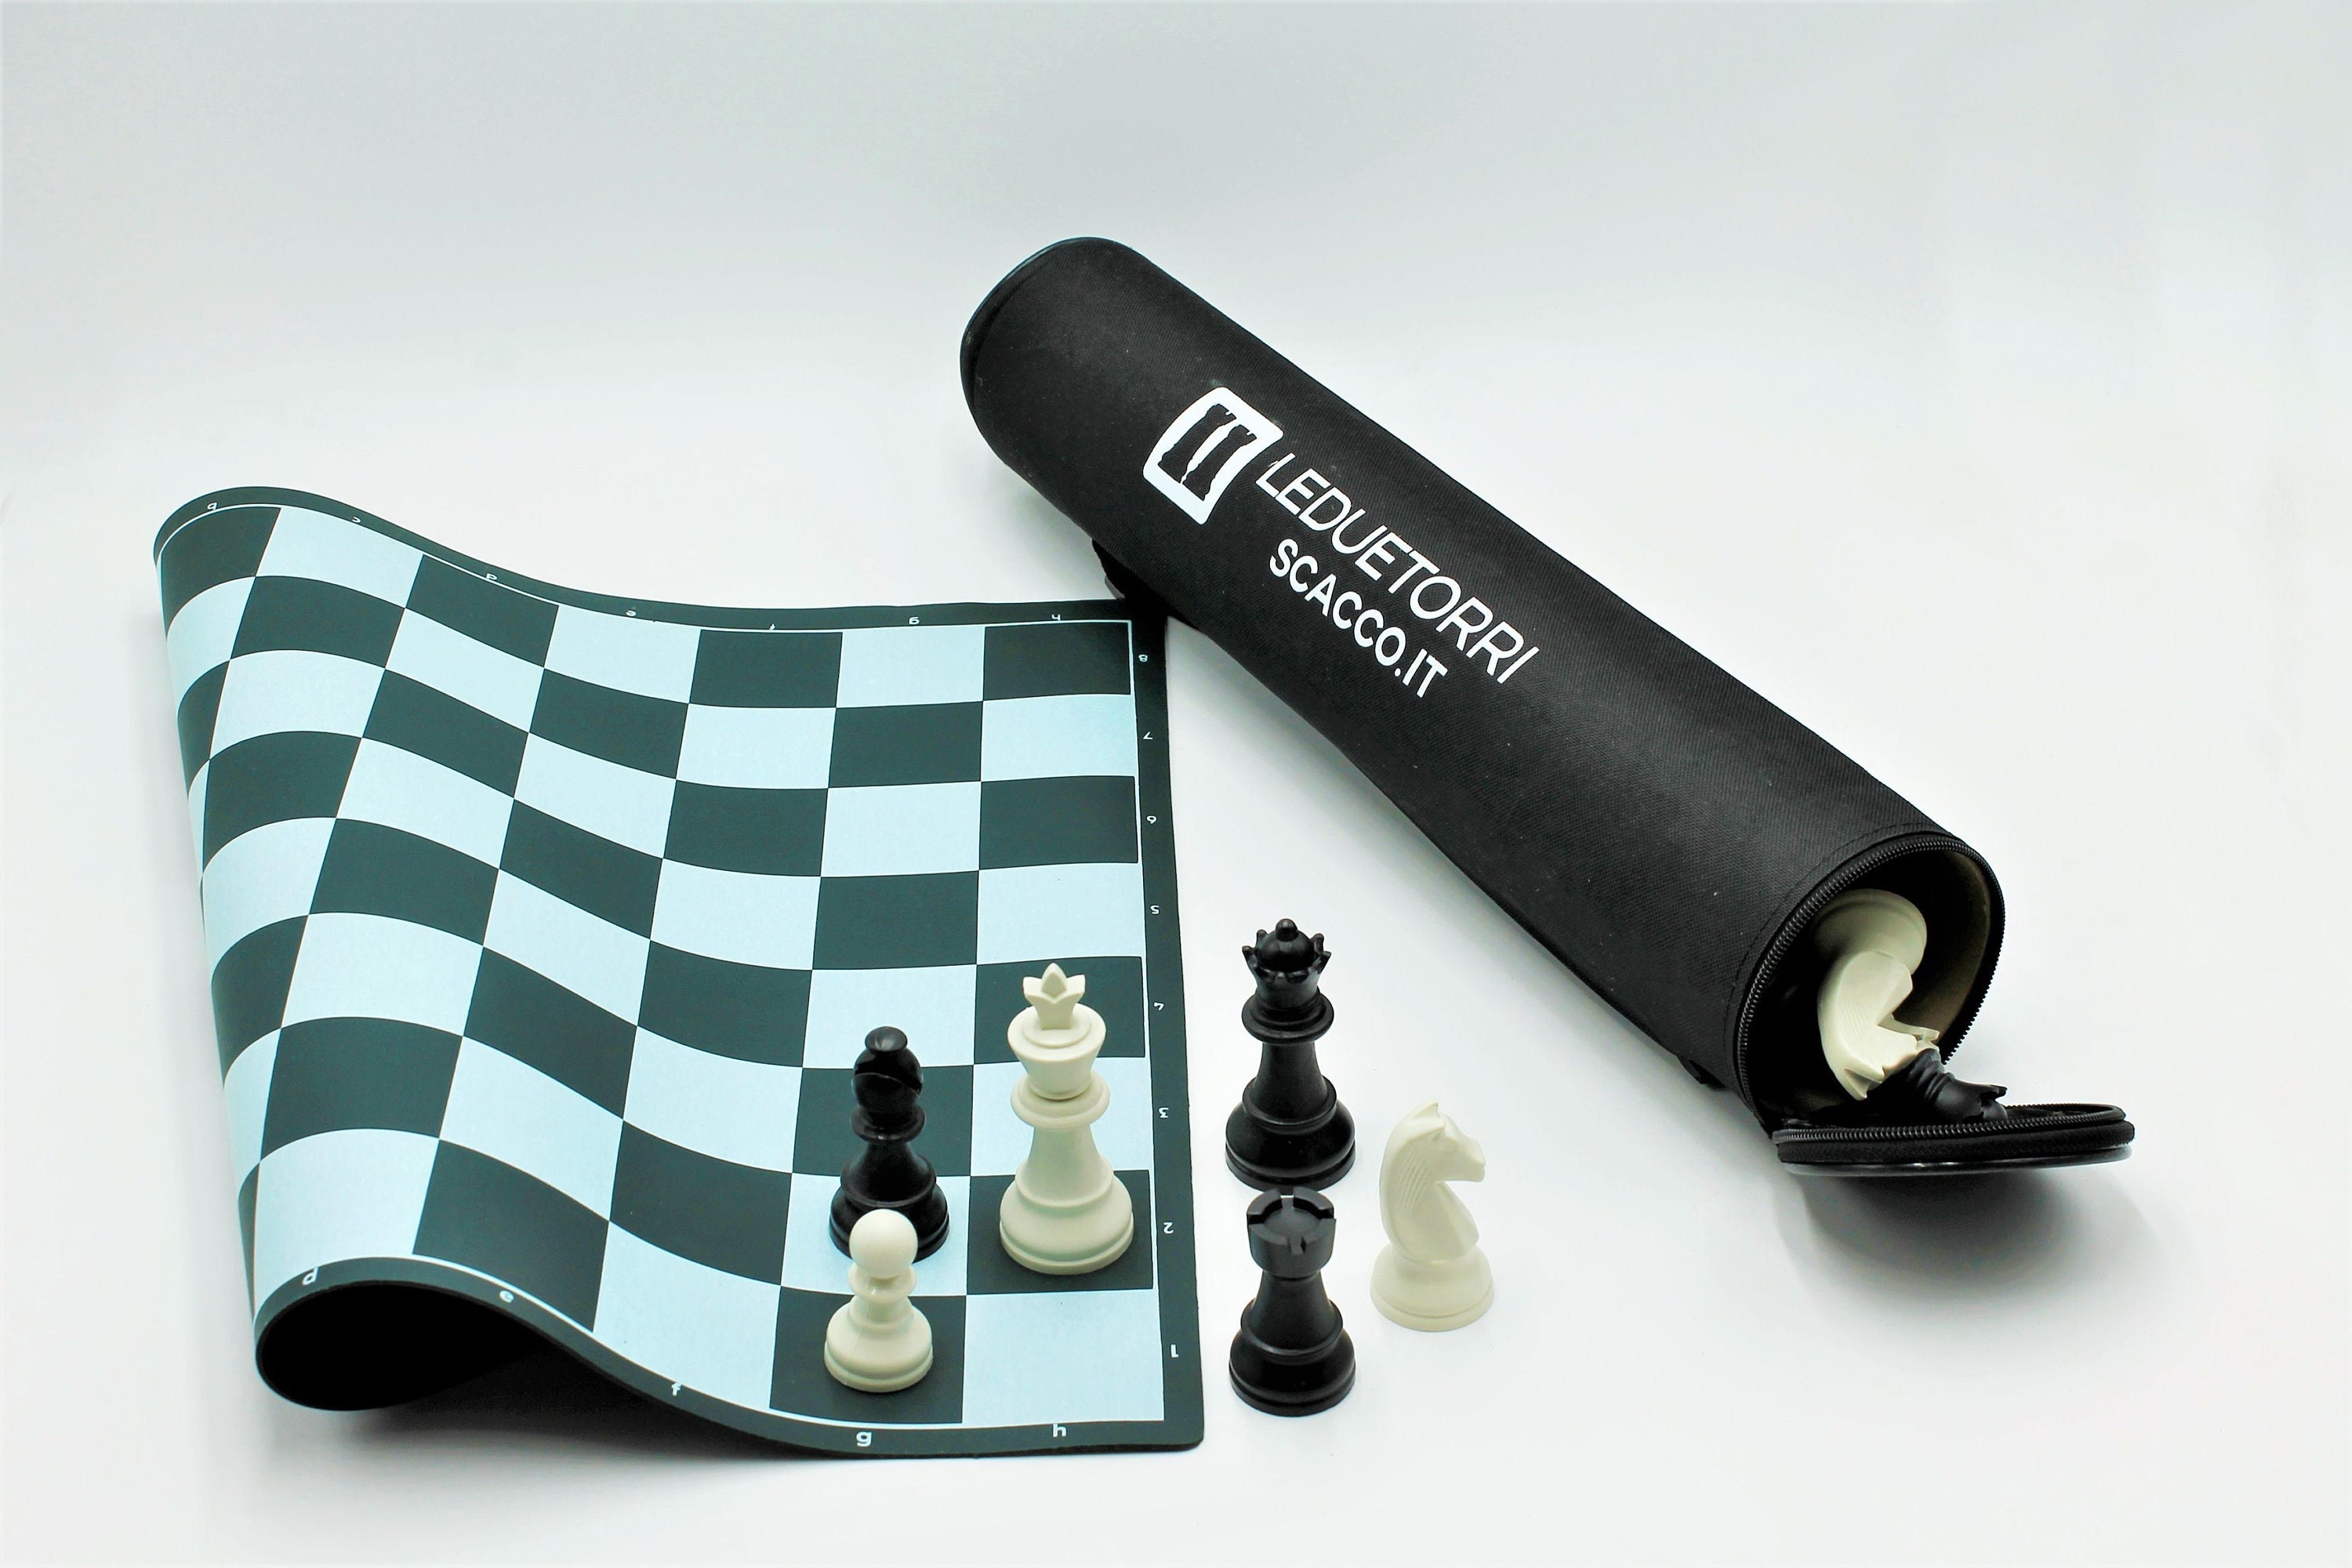 Professionelle Schach Set 32 Schach Stück Mit Rollbar Schach Board